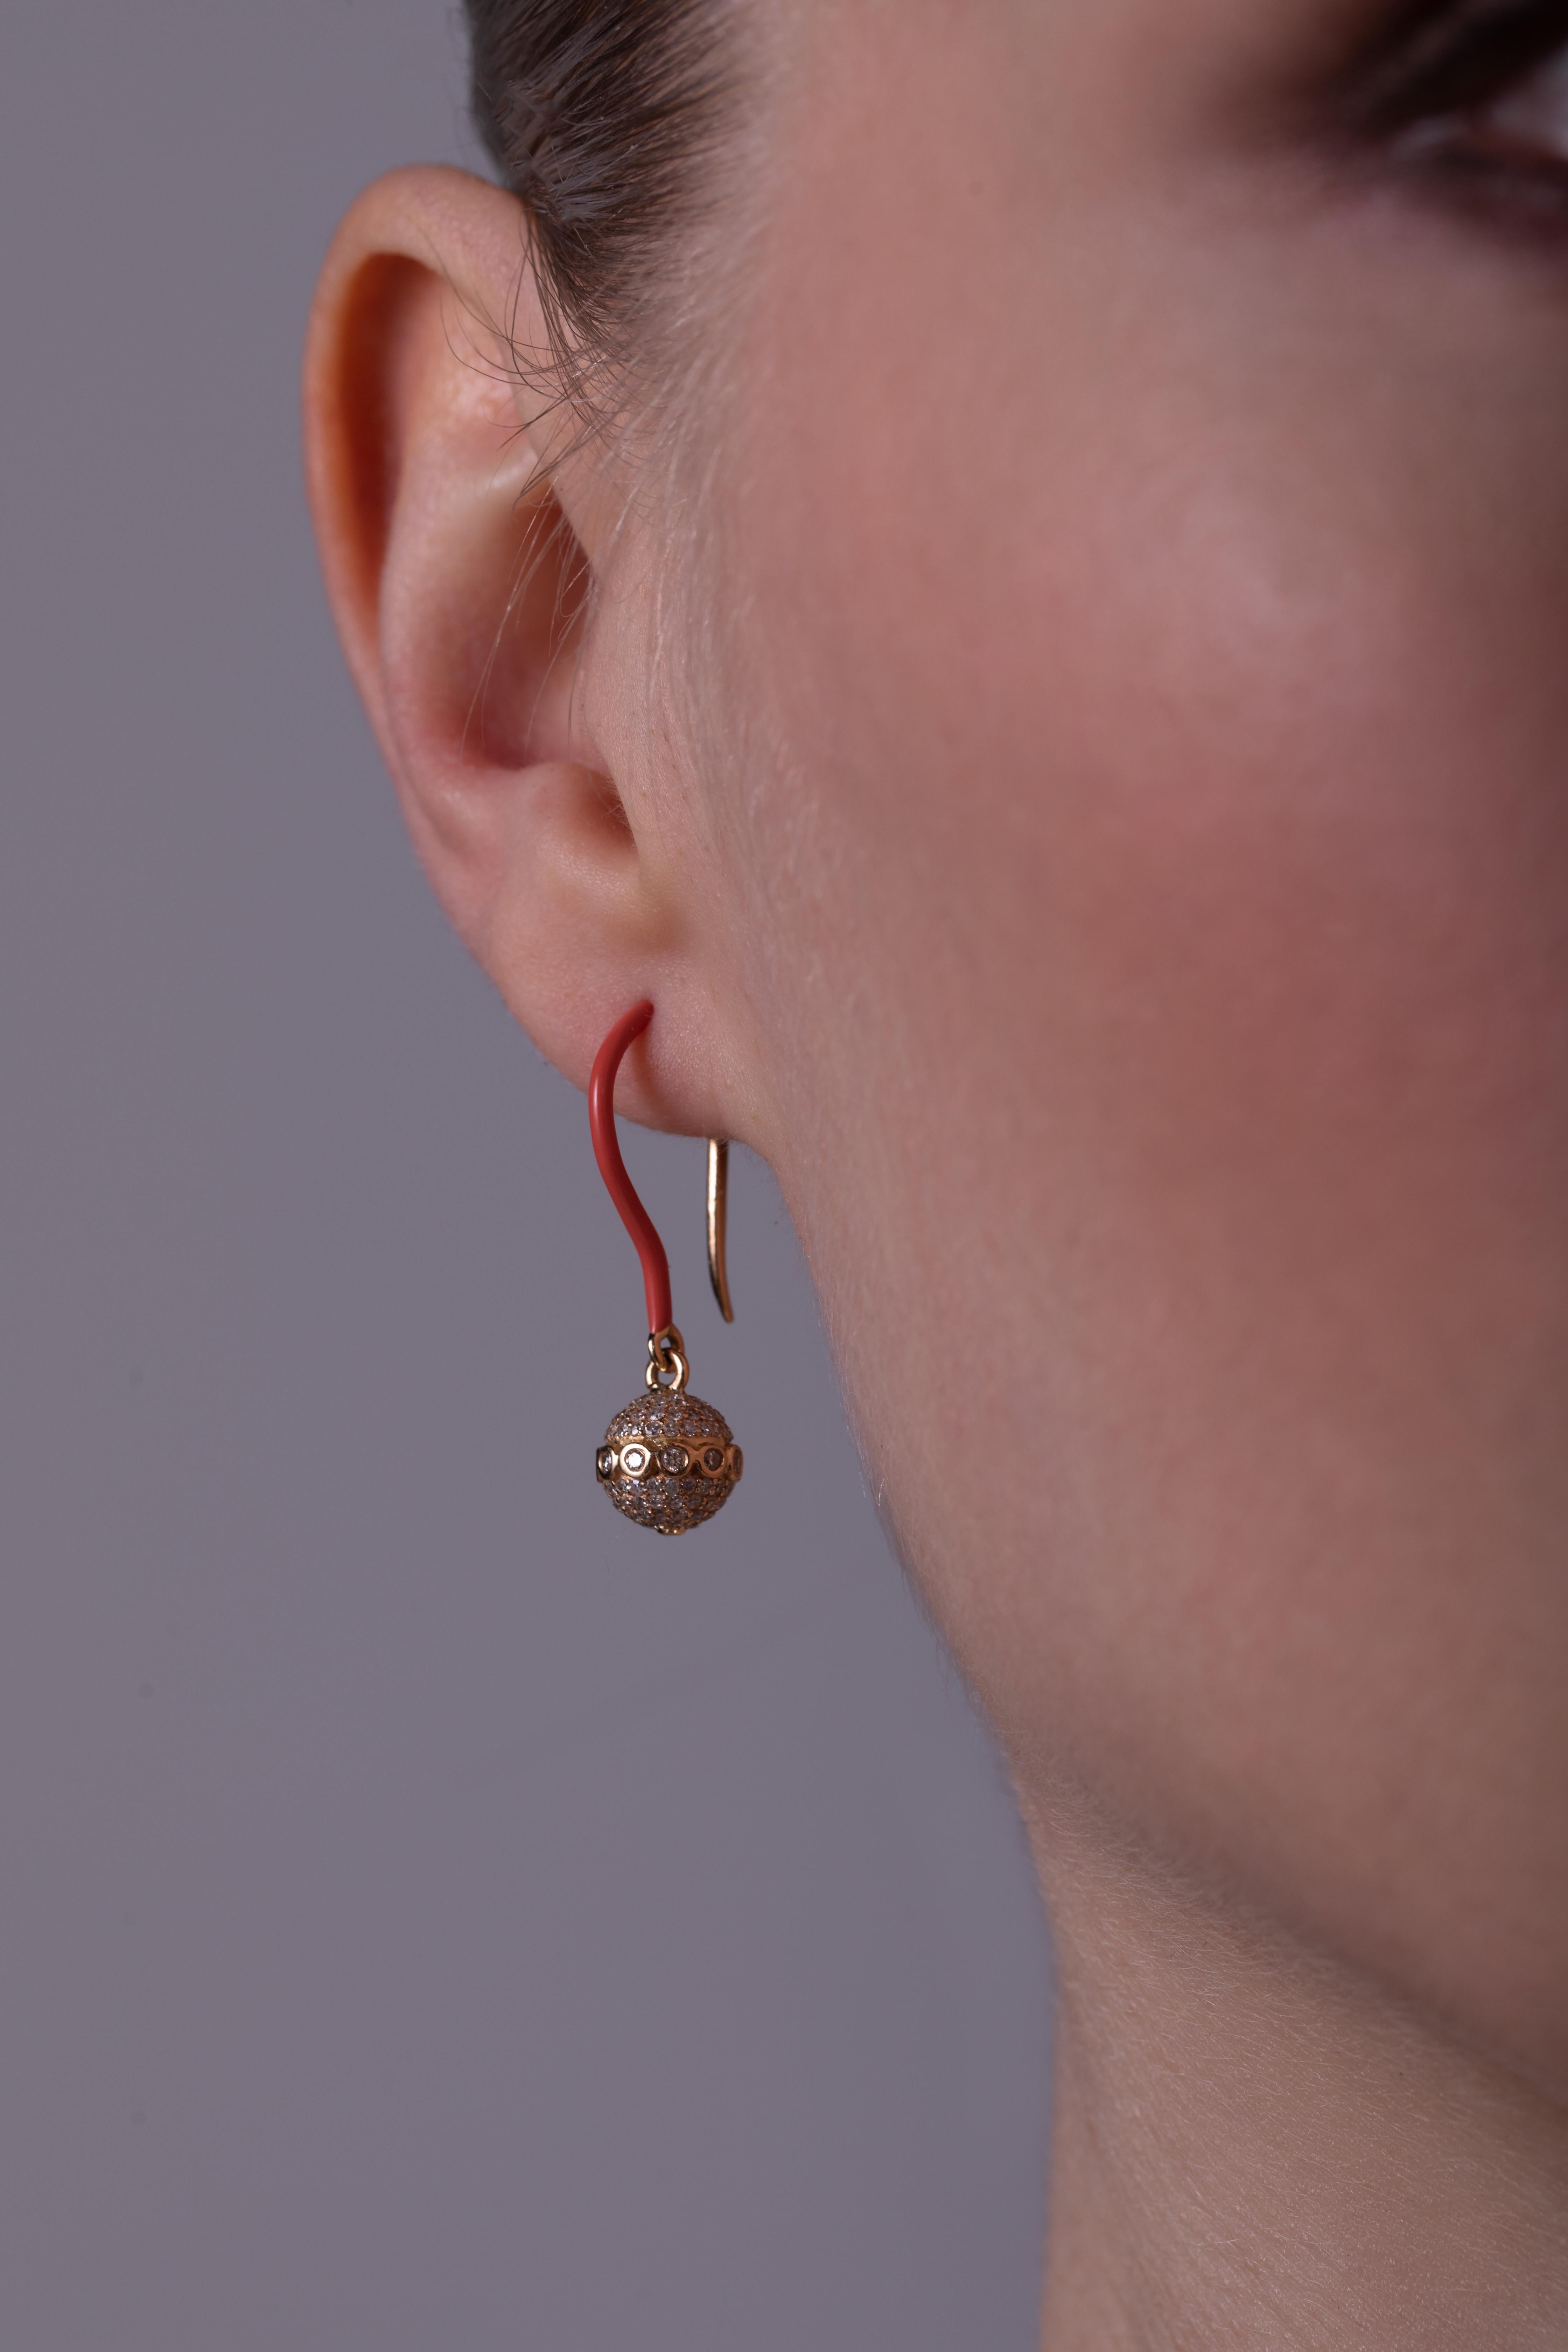 Wir sind bekannt für unsere skulpturalen Arrangements, die sorgfältig mit der Form unserer charakteristischen Perlen spielen. Diese Ohrringe aus 18-karätigem Gelbgold sind mit Diamanten besetzt und von Hand mit rosafarbener Emaille bemalt, um die